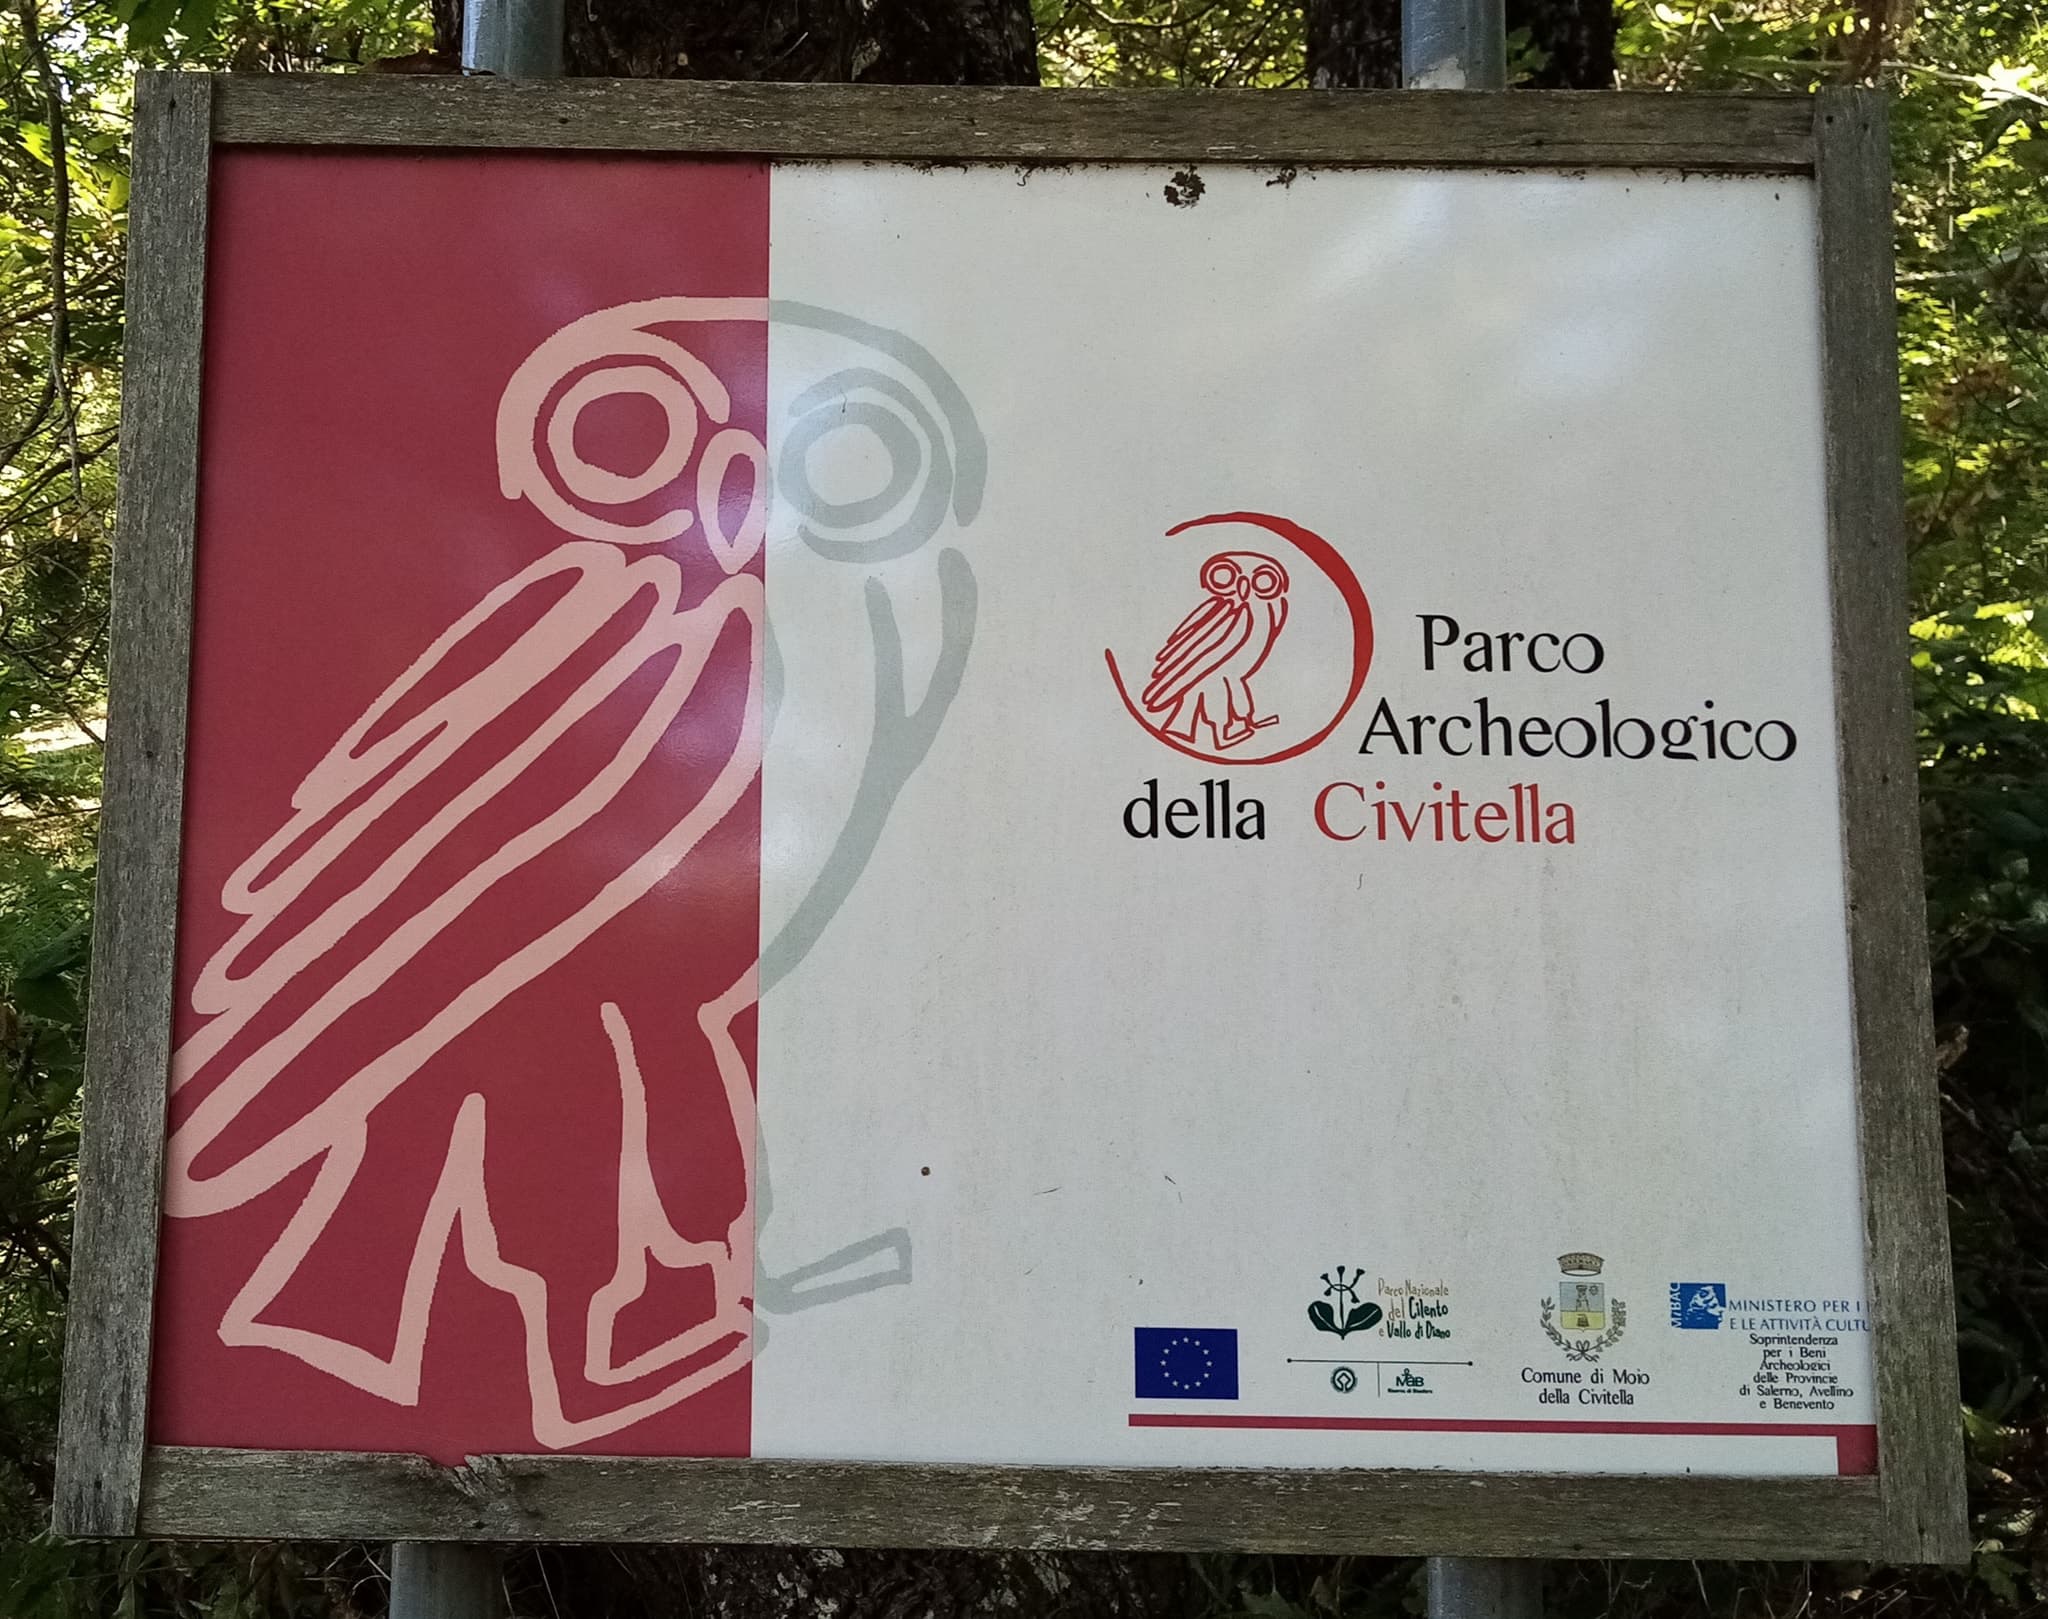 Parco Archeologico della Civitella